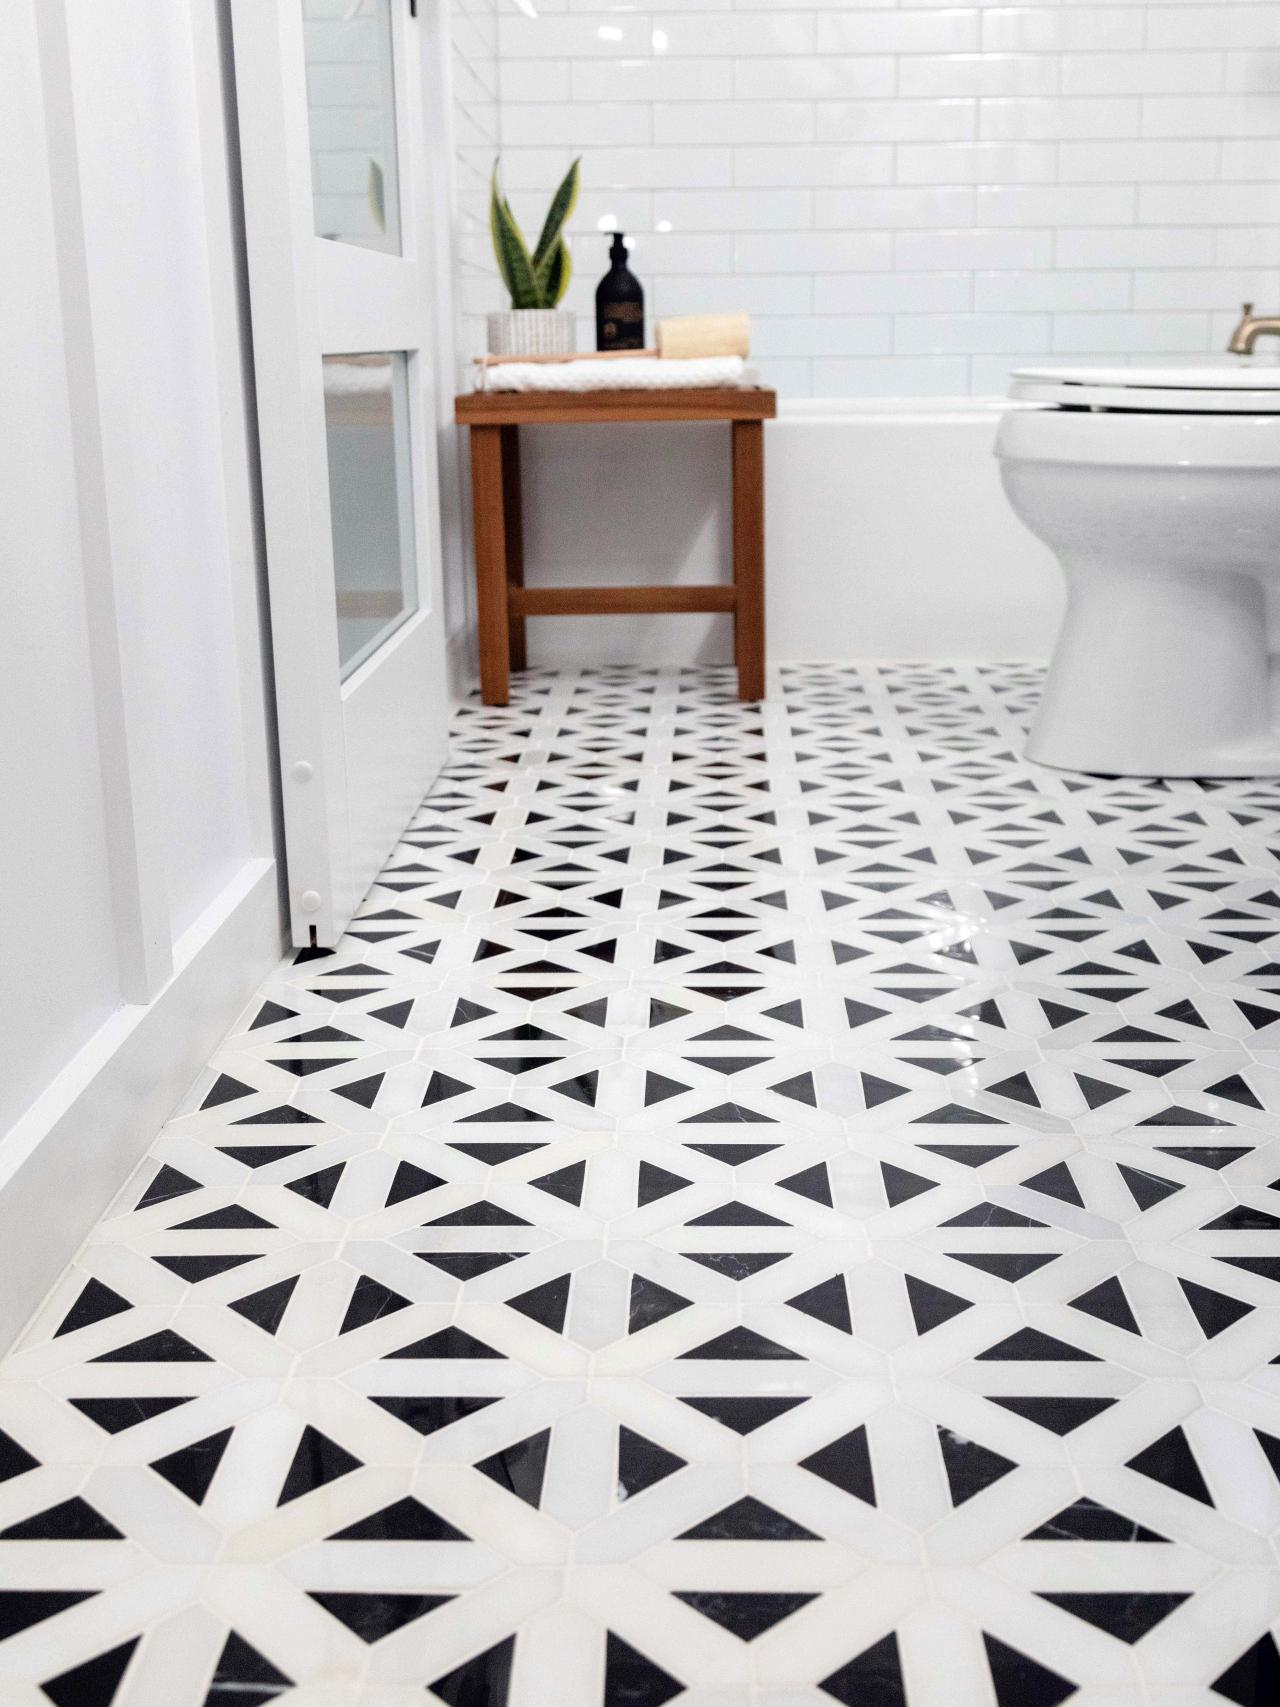 How To Lay A Tile Floor, Water Under Tile Floor In Bathroom